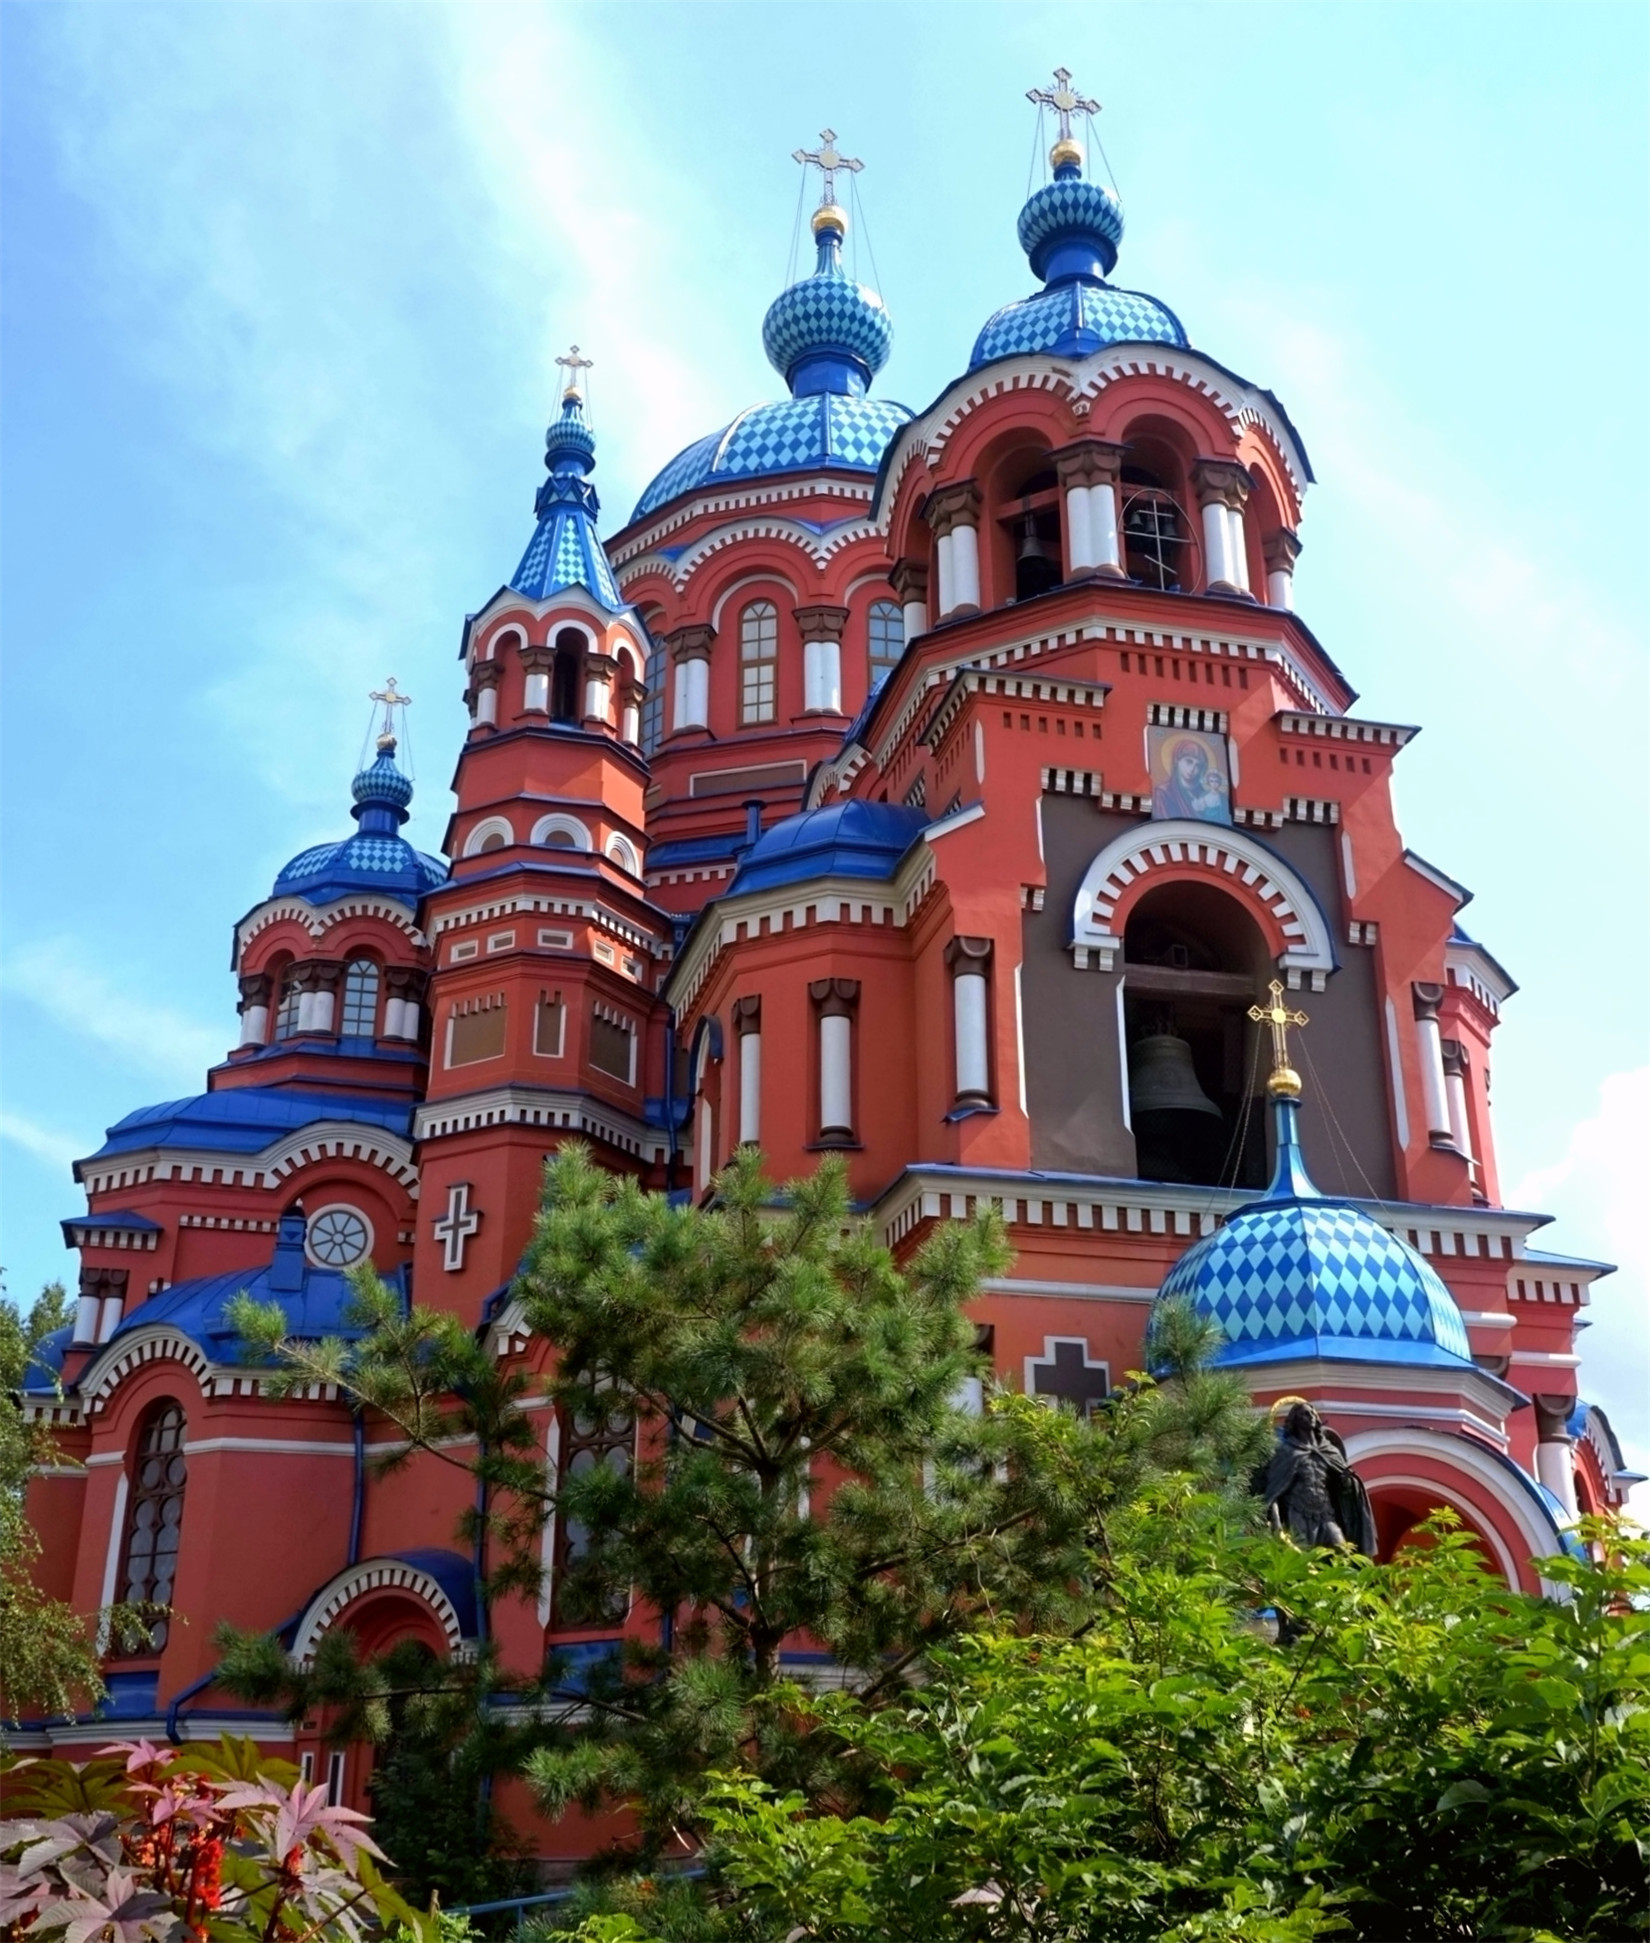 俄罗斯伊尔库茨克喀山圣母教堂